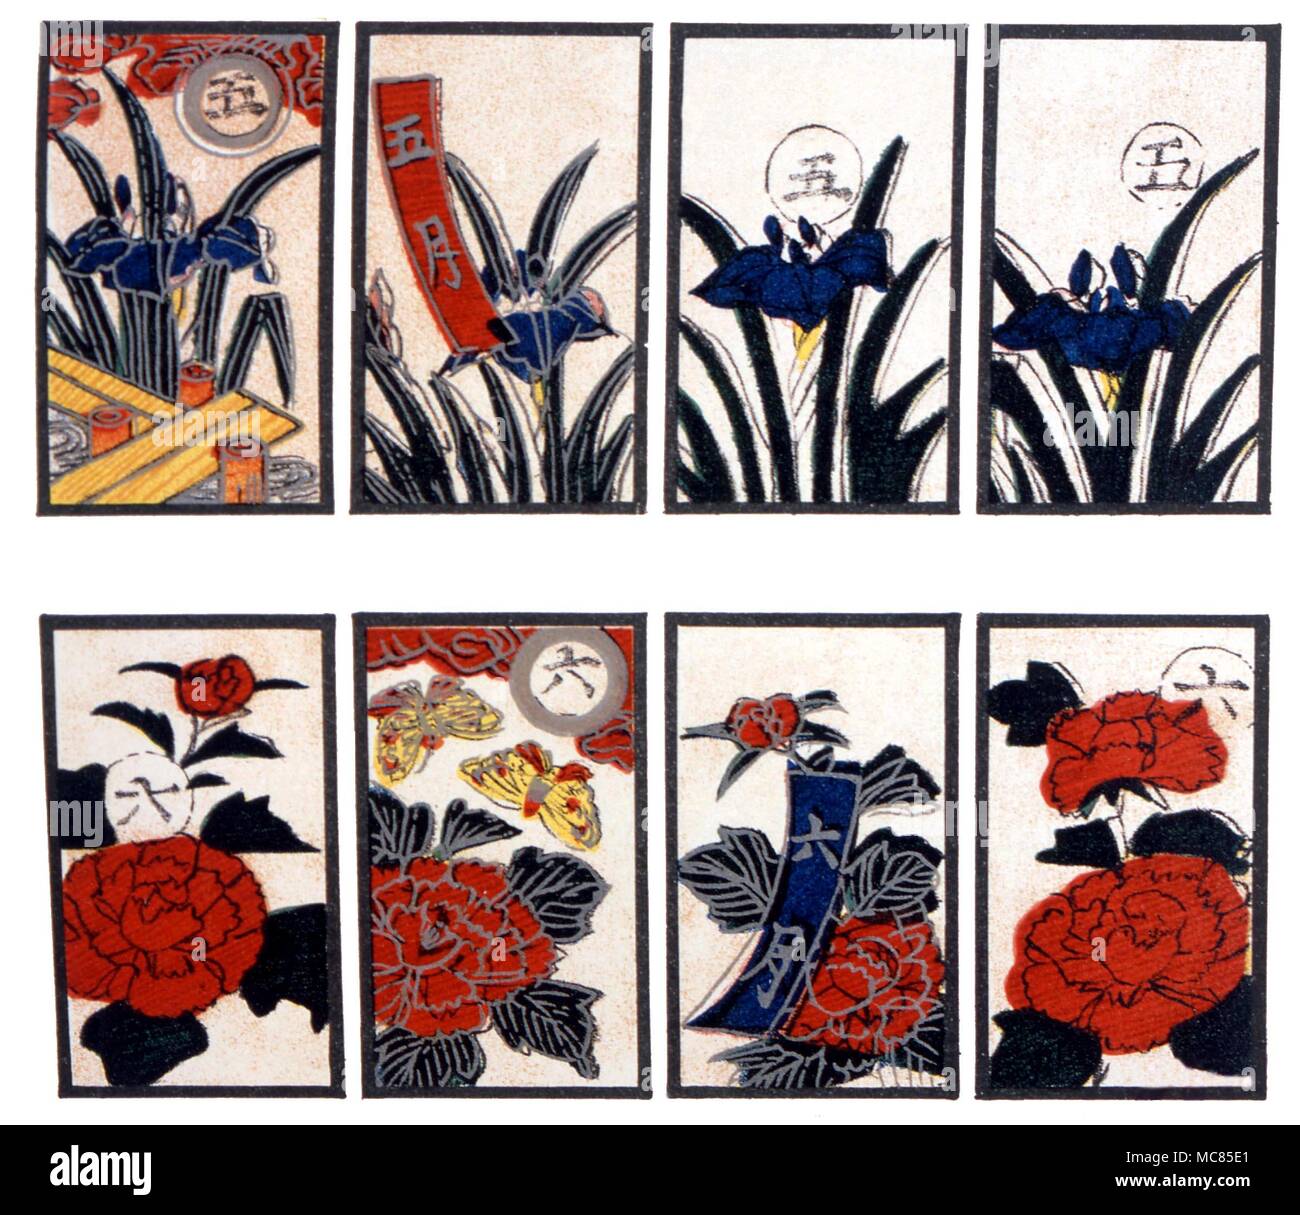 Cartomanzia. Giapponese carte da gioco, ciascuno dei quali rappresenta una settimana dell'anno. Serie di carte litografiche legati alla tradizione dei Tarocchi, da J,K, van Rensselaer "Devil's Foto Libri' 1892. Foto Stock